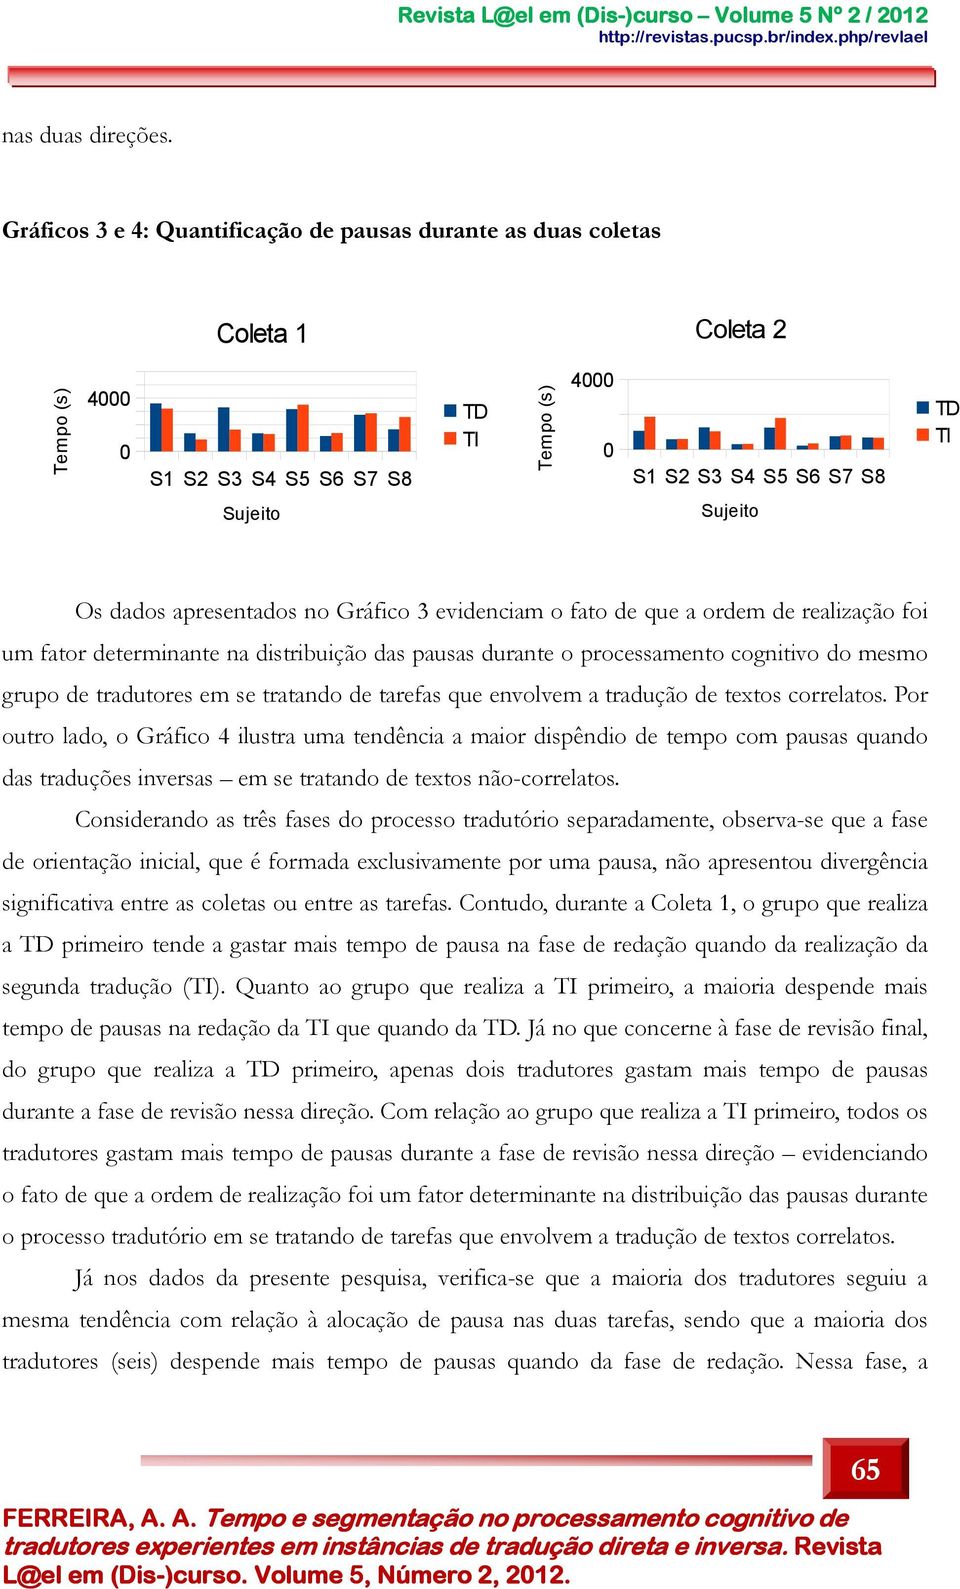 dados apresentados no Gráfico 3 evidenciam o fato de que a ordem de realização foi um fator determinante na distribuição das pausas durante o processamento cognitivo do mesmo grupo de tradutores em